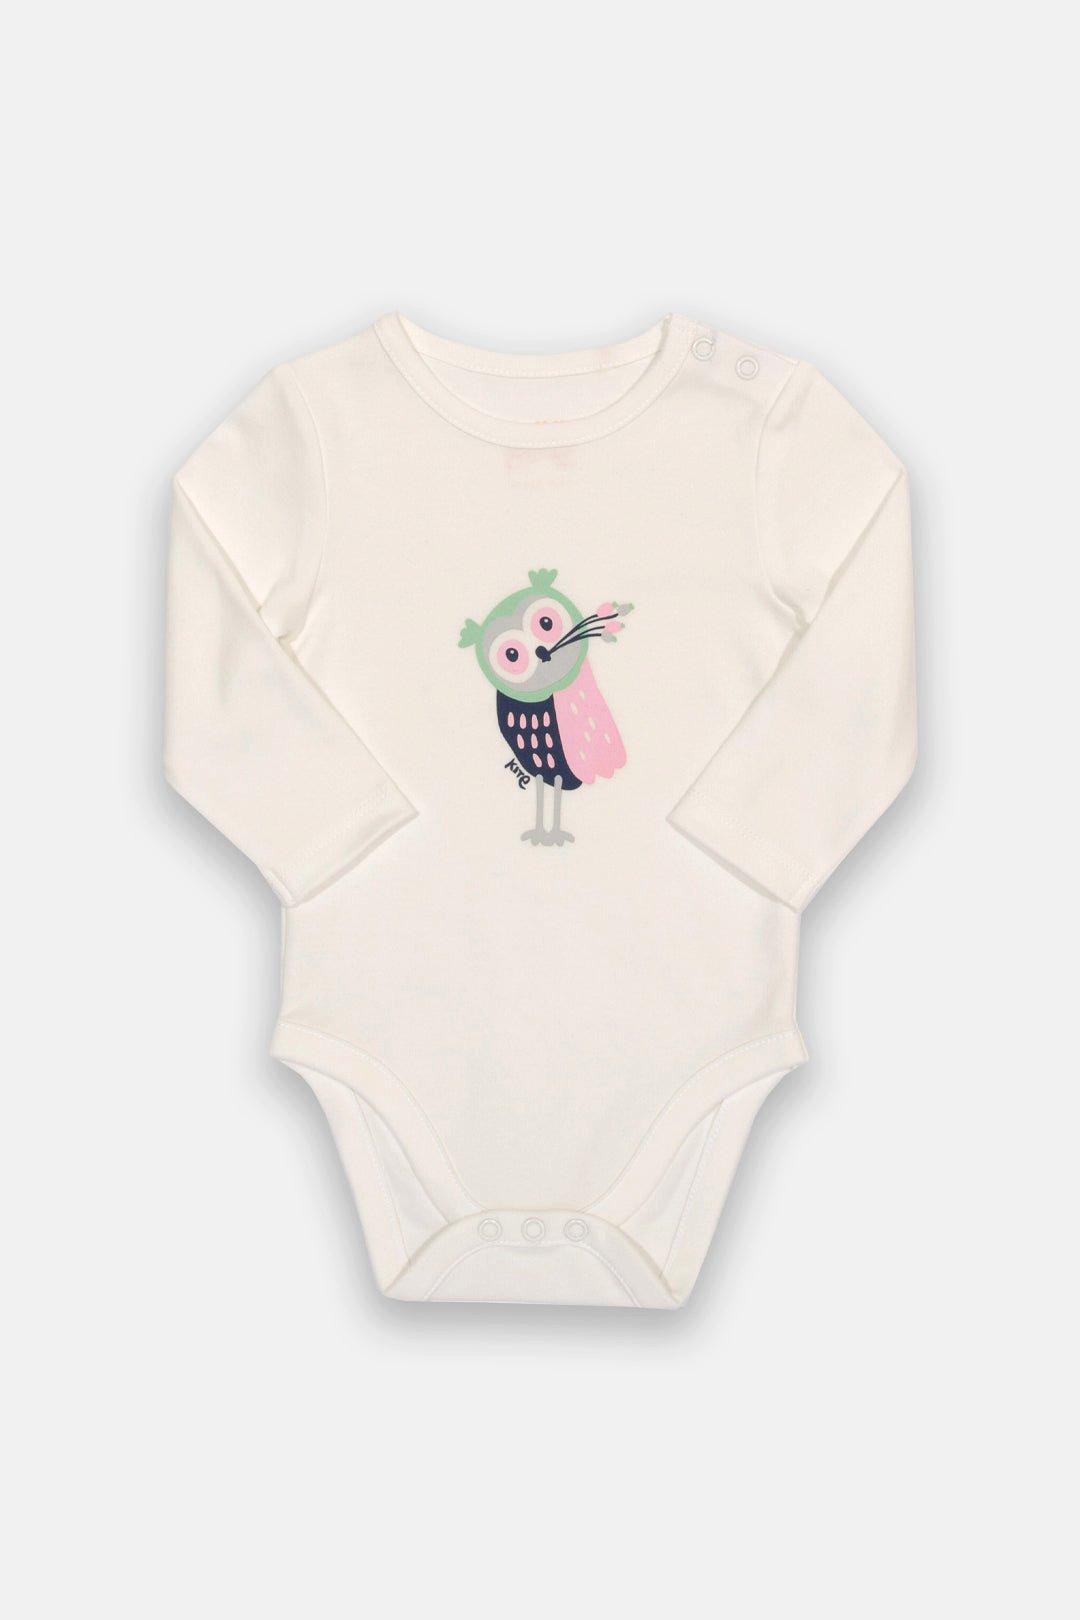 Baby Girl Owlet Bodysuit